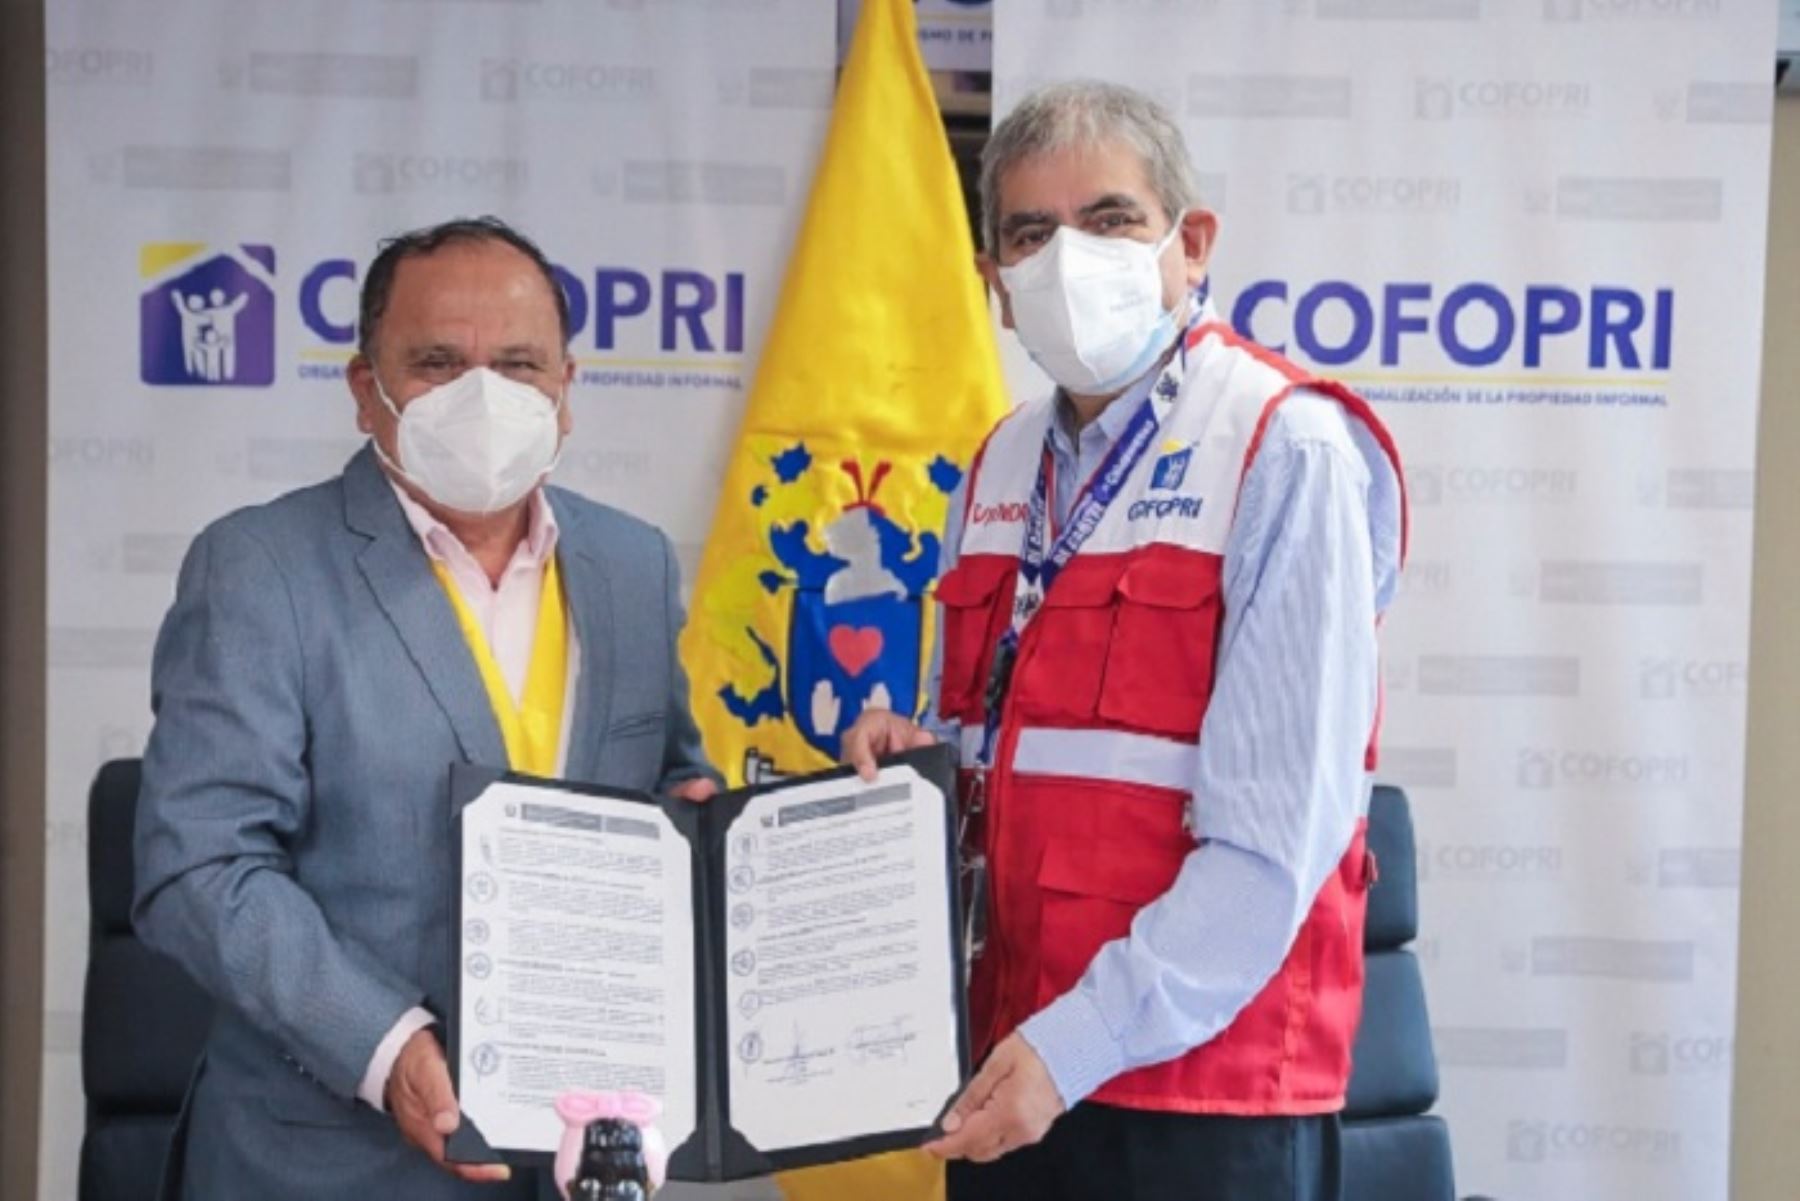 En el acto protocolar participaron el director ejecutivo de Cofopri, Jorge Luis Quevedo Mera; y el alcalde provincial de Cañete, Segundo Díaz de la Cruz.